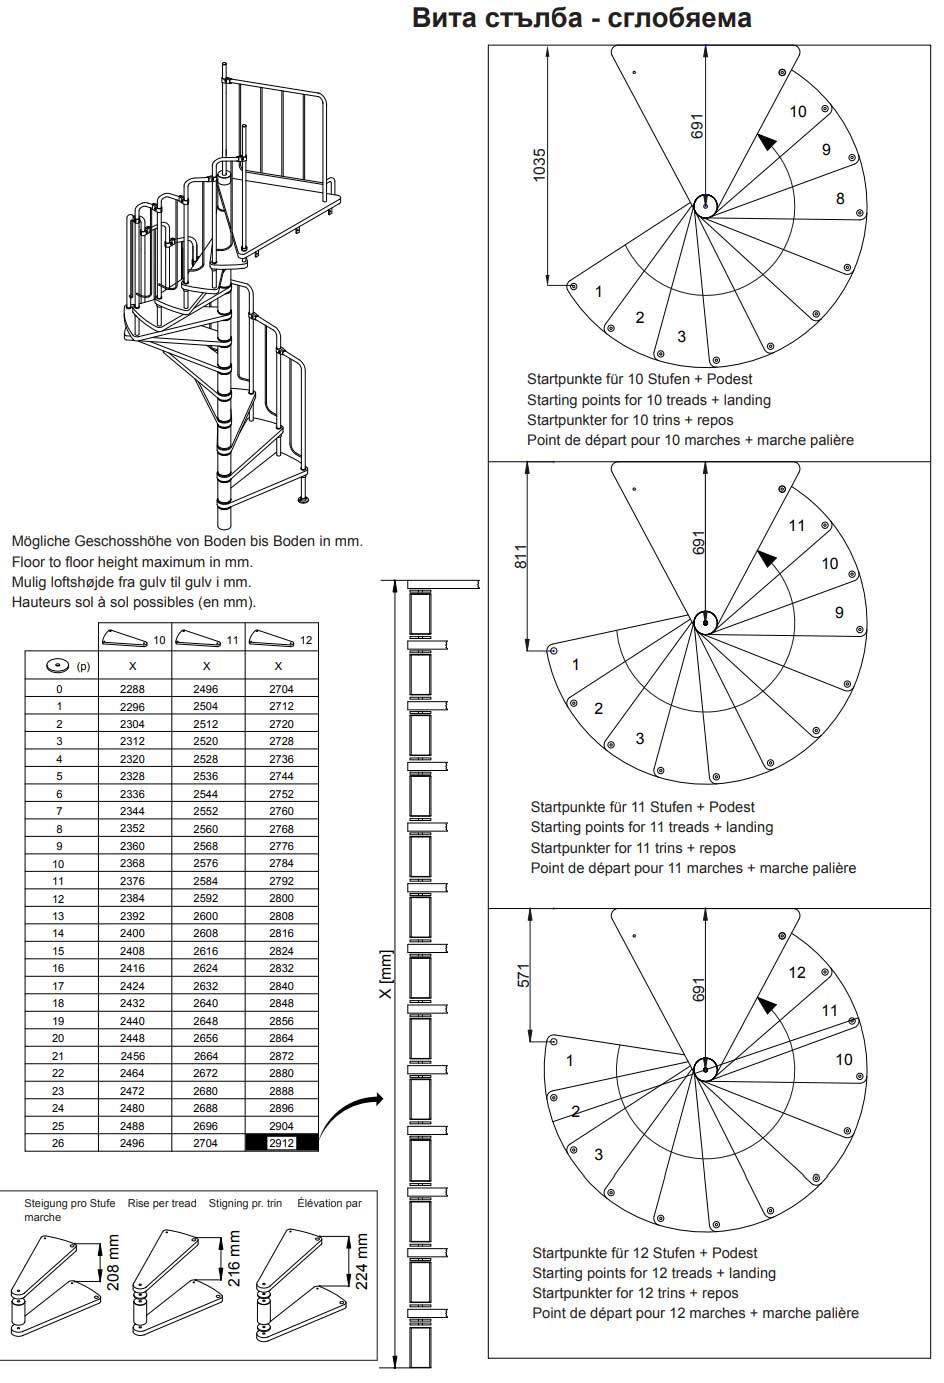 Схема с размери на вита стълба при различен брой стъпала